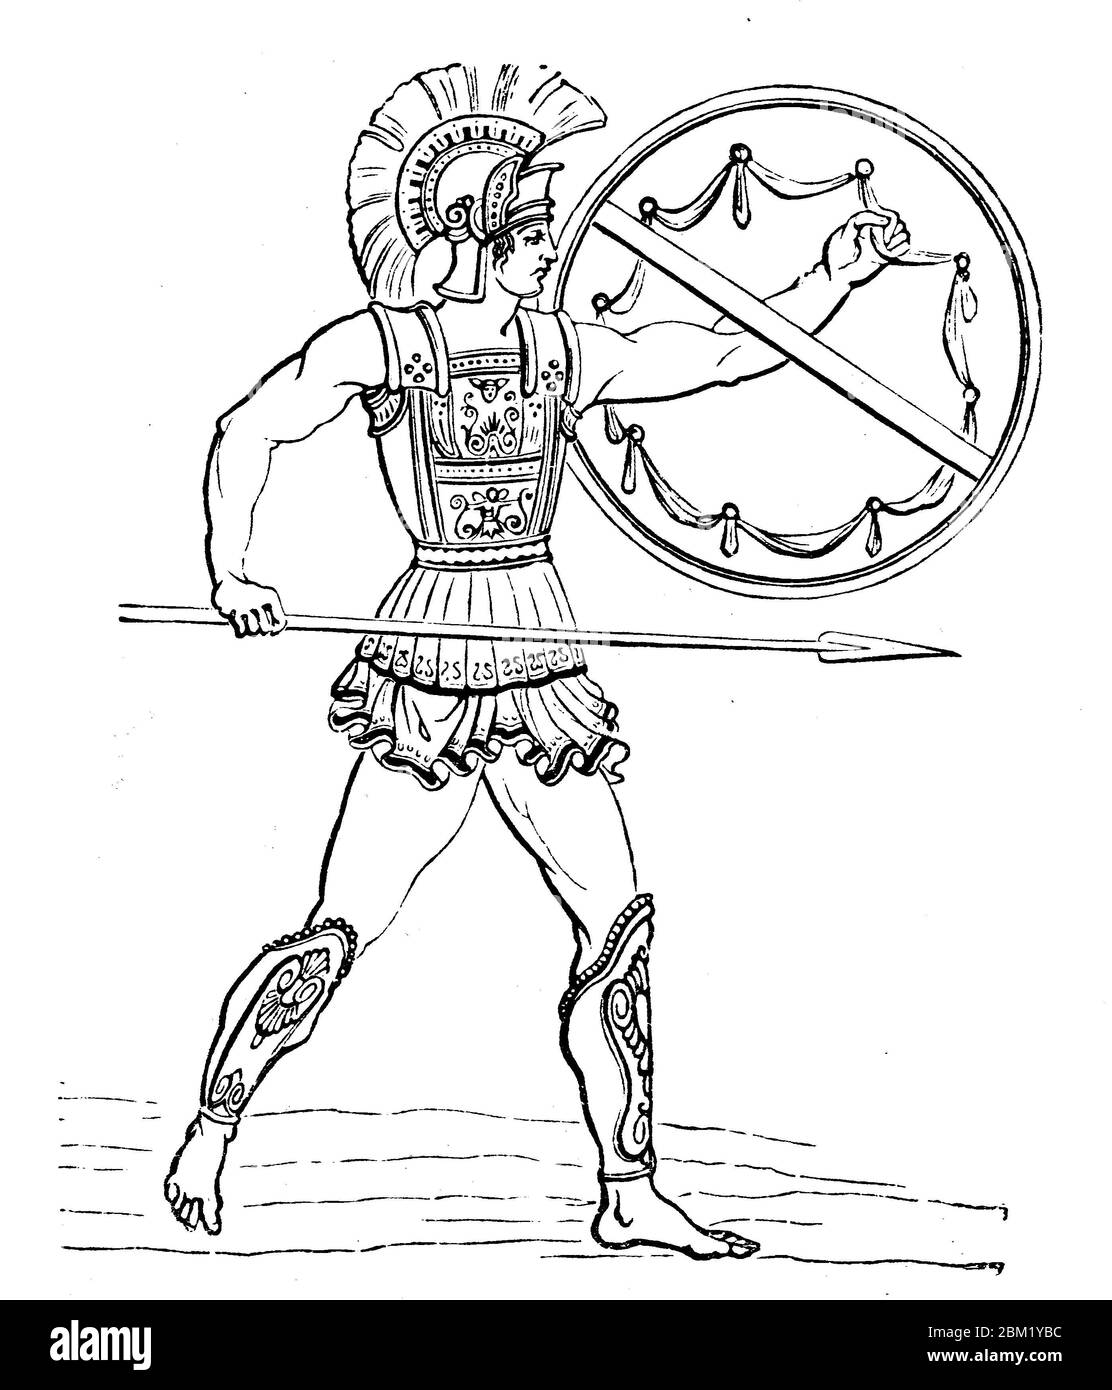 L'Oplite greca, un Oplite, un Oplite, tedesco pesantemente armato,  attrezzature militari, armature, scudo, era un membro della forza  principale degli eserciti greci del periodo Archaico e classico /  griechischer Hoplit, Ein Hoplit